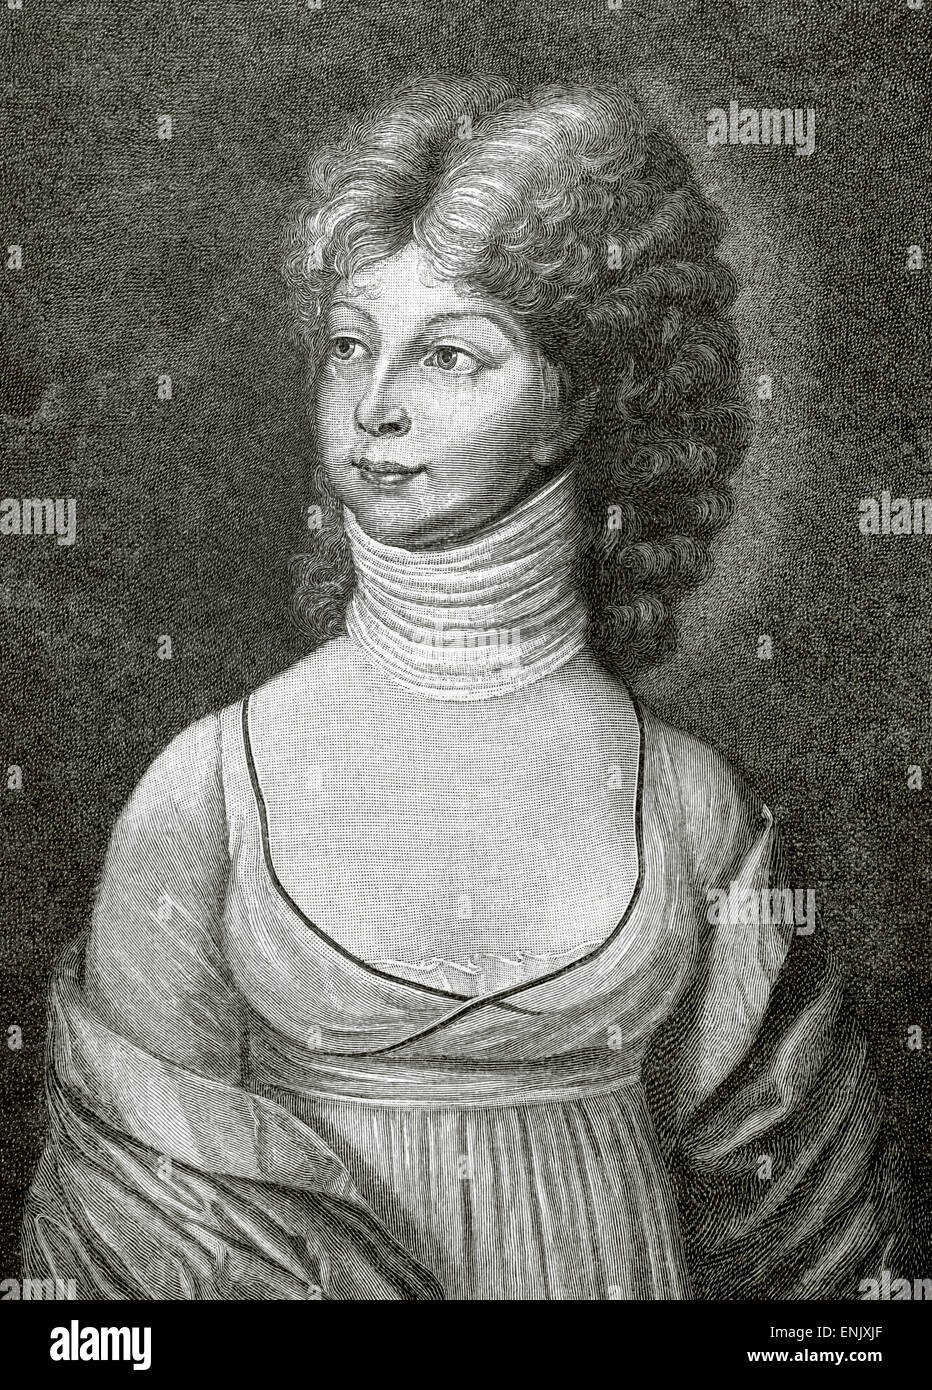 Luise von Mecklenburg-Strelitz (1776-1810). Queen Consort von Preußen. Ehefrau von König Friedrich Wilhelm III. Porträt. Gravur. Historia Universal, 1881. Stockfoto